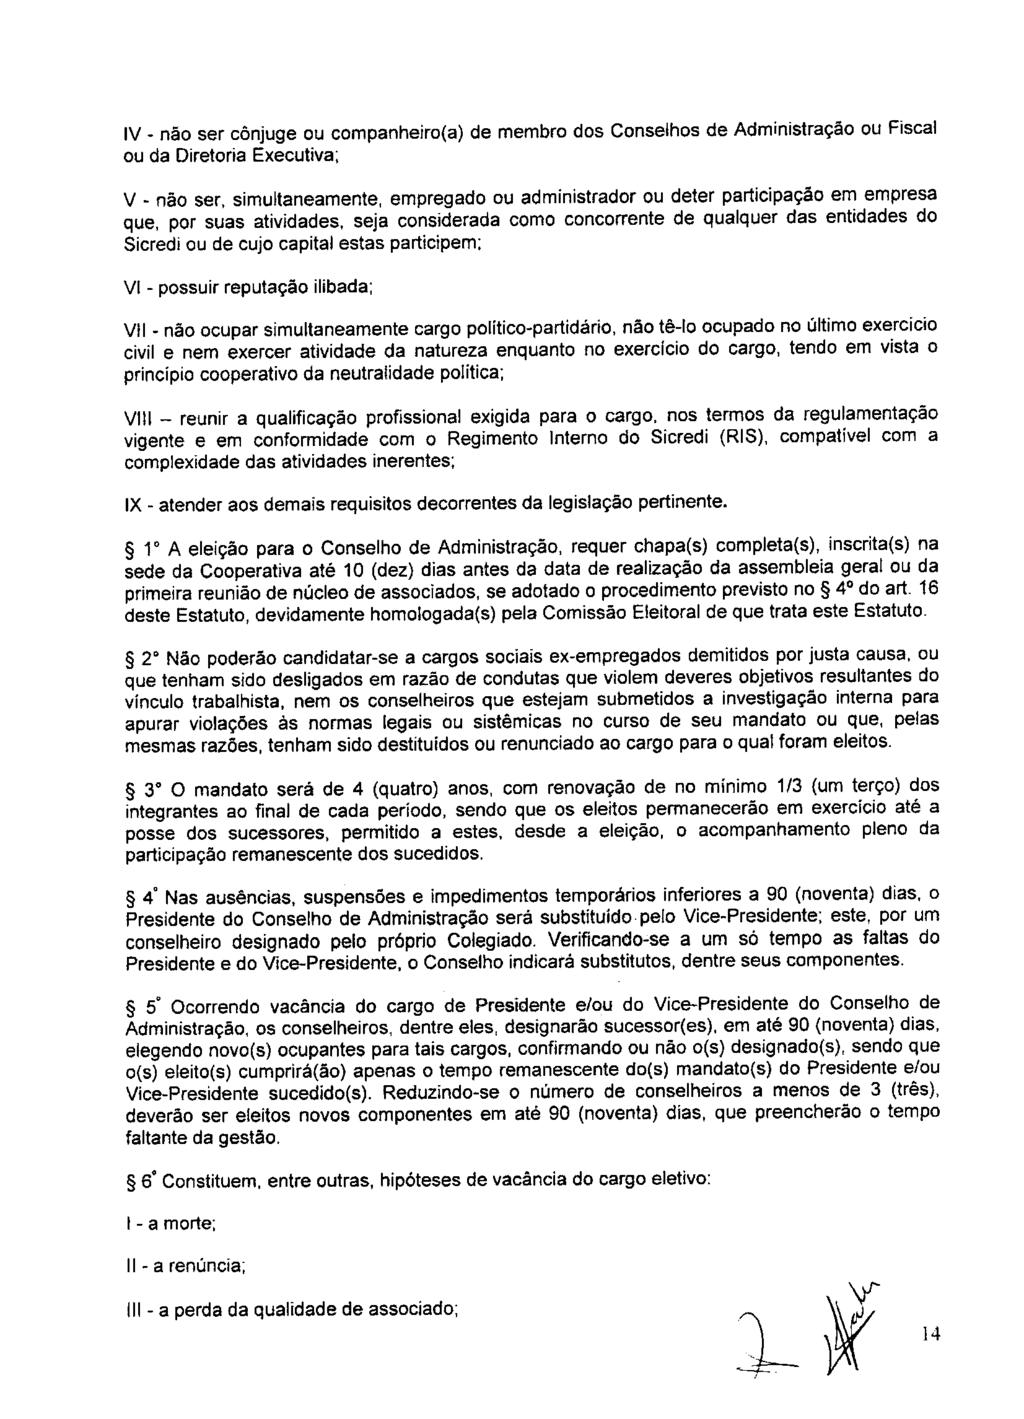 fls. 20 Este documento é cópia do original, assinado digitalmente por ANA ROSA MARQUES CROCE e Tribunal de Justica Sao Paulo, protocolado em 10/02/2016 às 15:37, sob o número